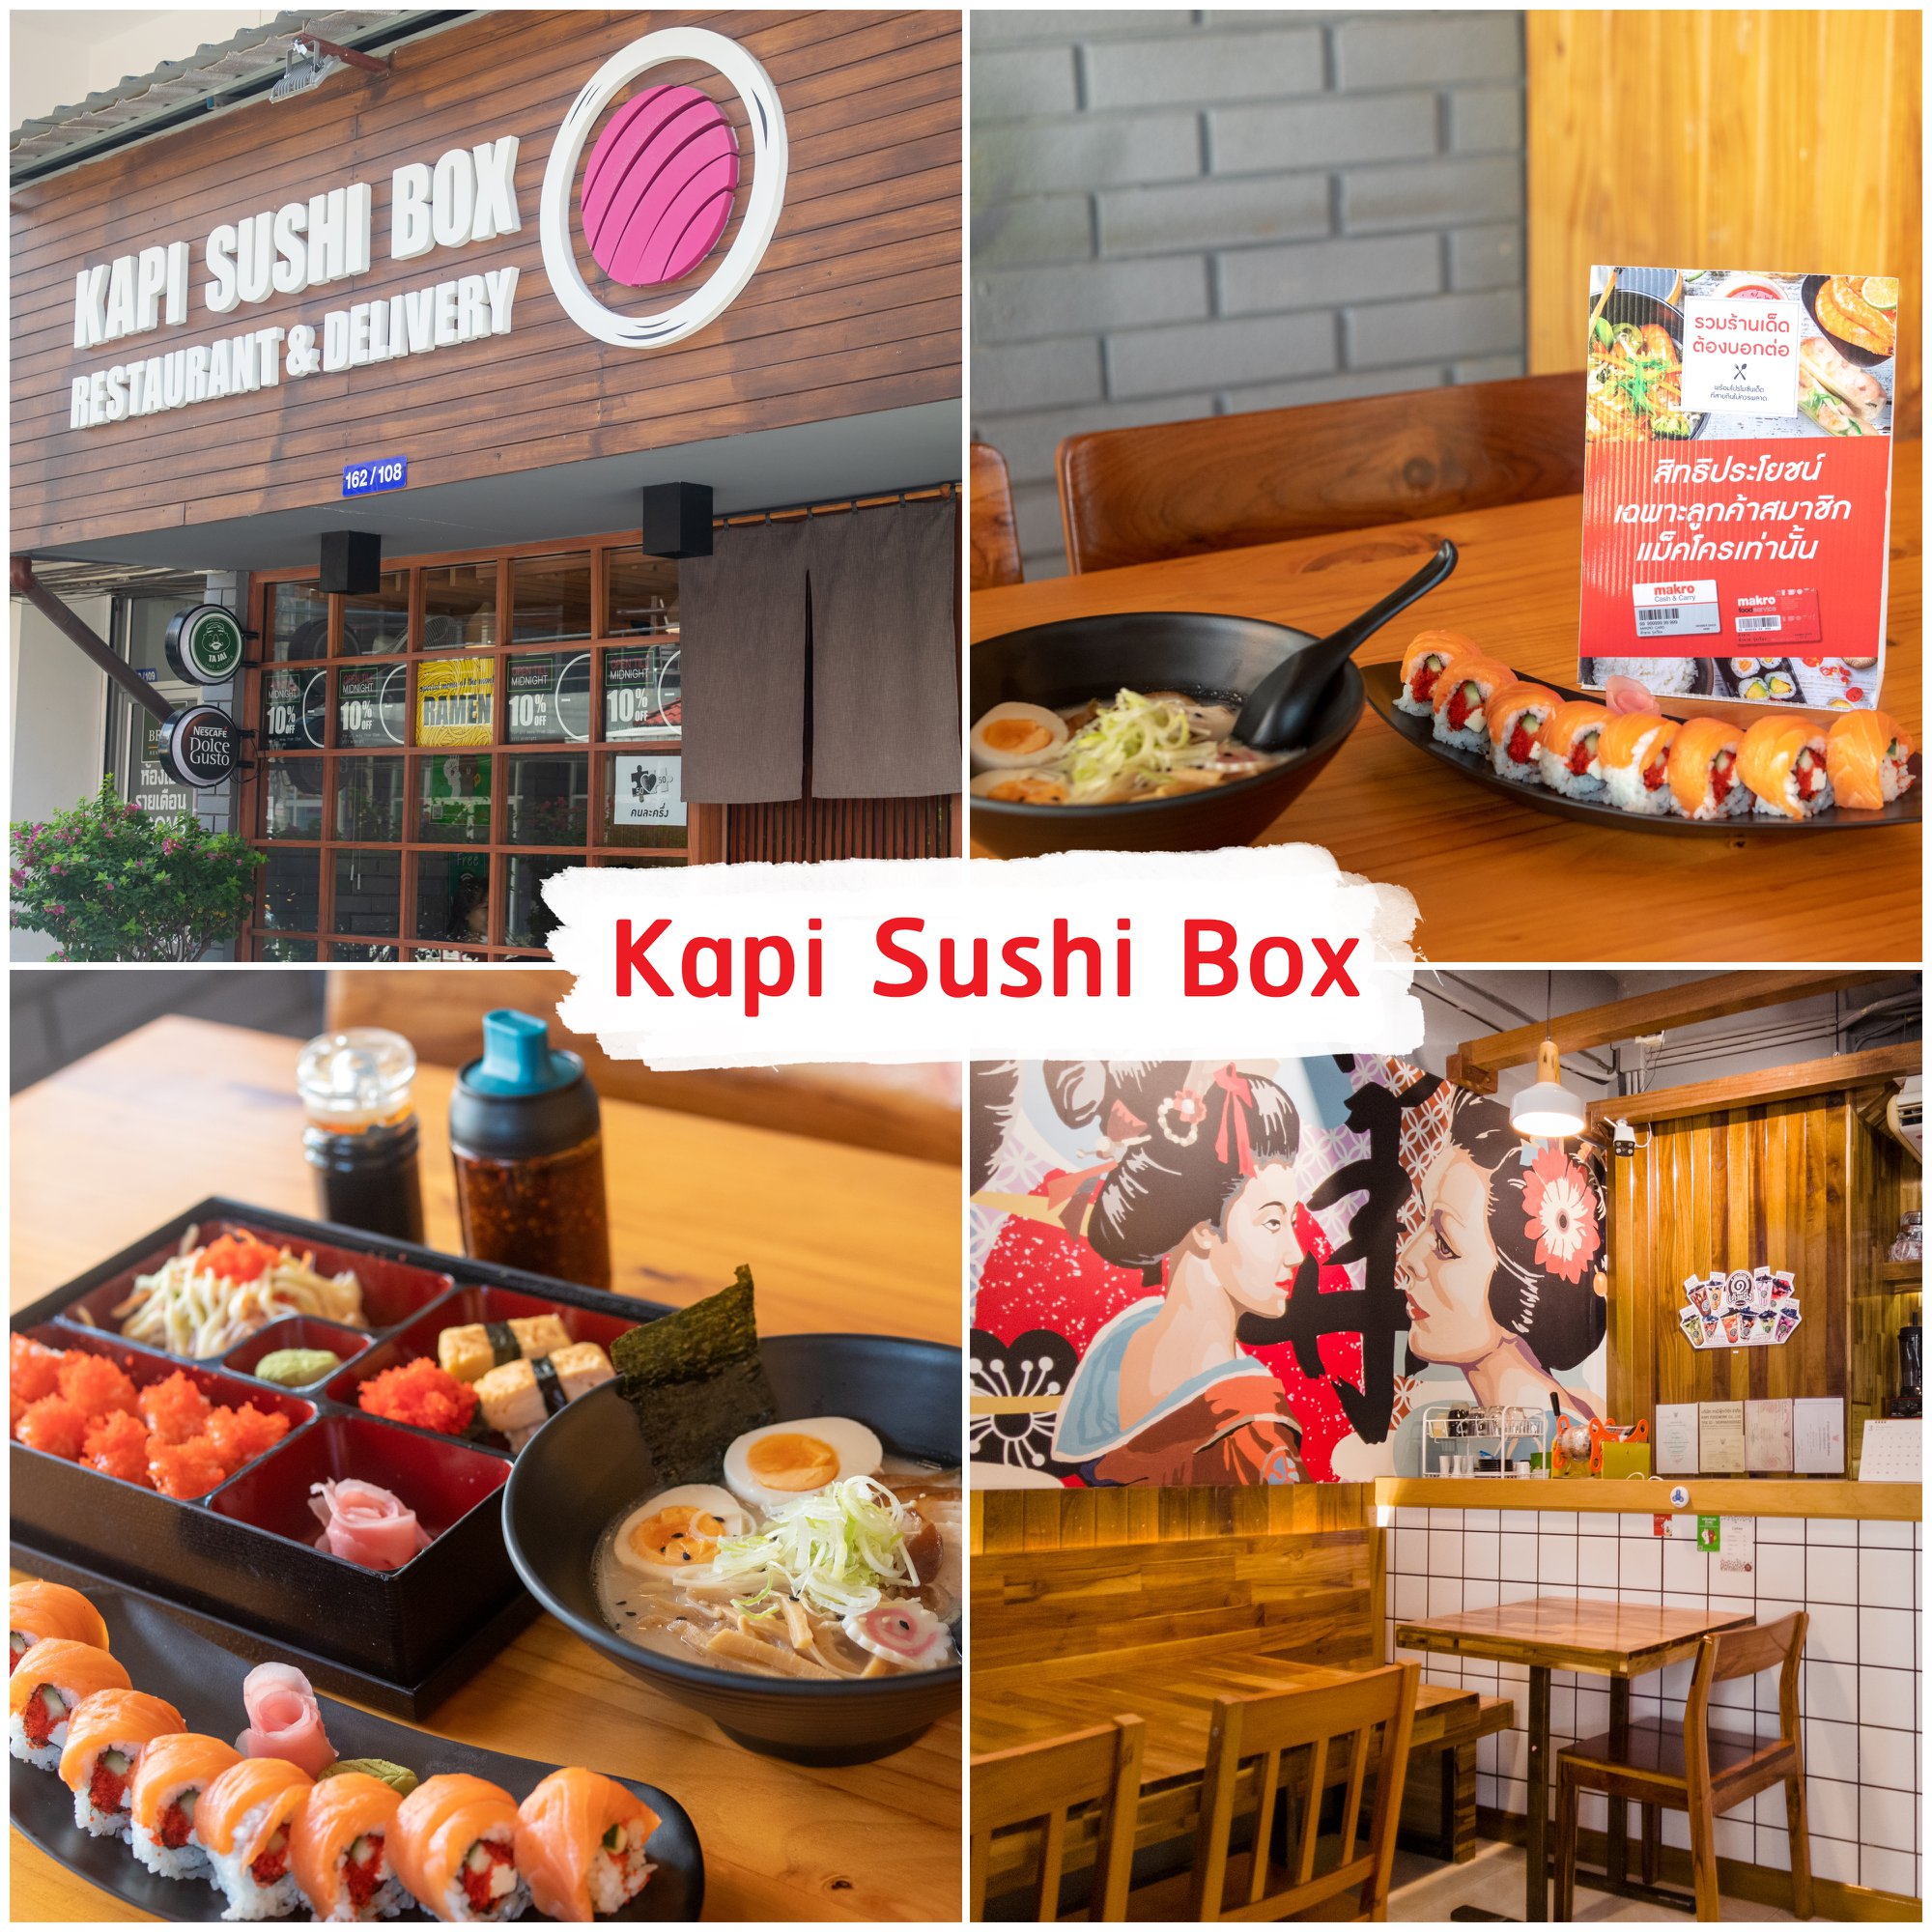 Kapi-Sushi-Box -ร้านซูชิลับๆ-ในเมืองป่าตอง-จุดเด่นคือร้านนี้เปิดตลอด-แถมส่งตลอด-ไกลแค่ไหนก็ไป----ถือว่าสุดยอดมากก-แถมอาหาร-ทั้งเมนูซูชิ-ซาซิมิ-ราเมง-อร่อยด้วยเลยน้าา
บอกเลยว่าเด็ด-บรรยากาศร้านแอร์นั่งชิวๆสบายๆ-เมนูมีให้เลือกมากมายเลยครับผม ภูเก็ต,ร้านอาหารภูเก็ต,ร้านอร่อยภูเก็ต